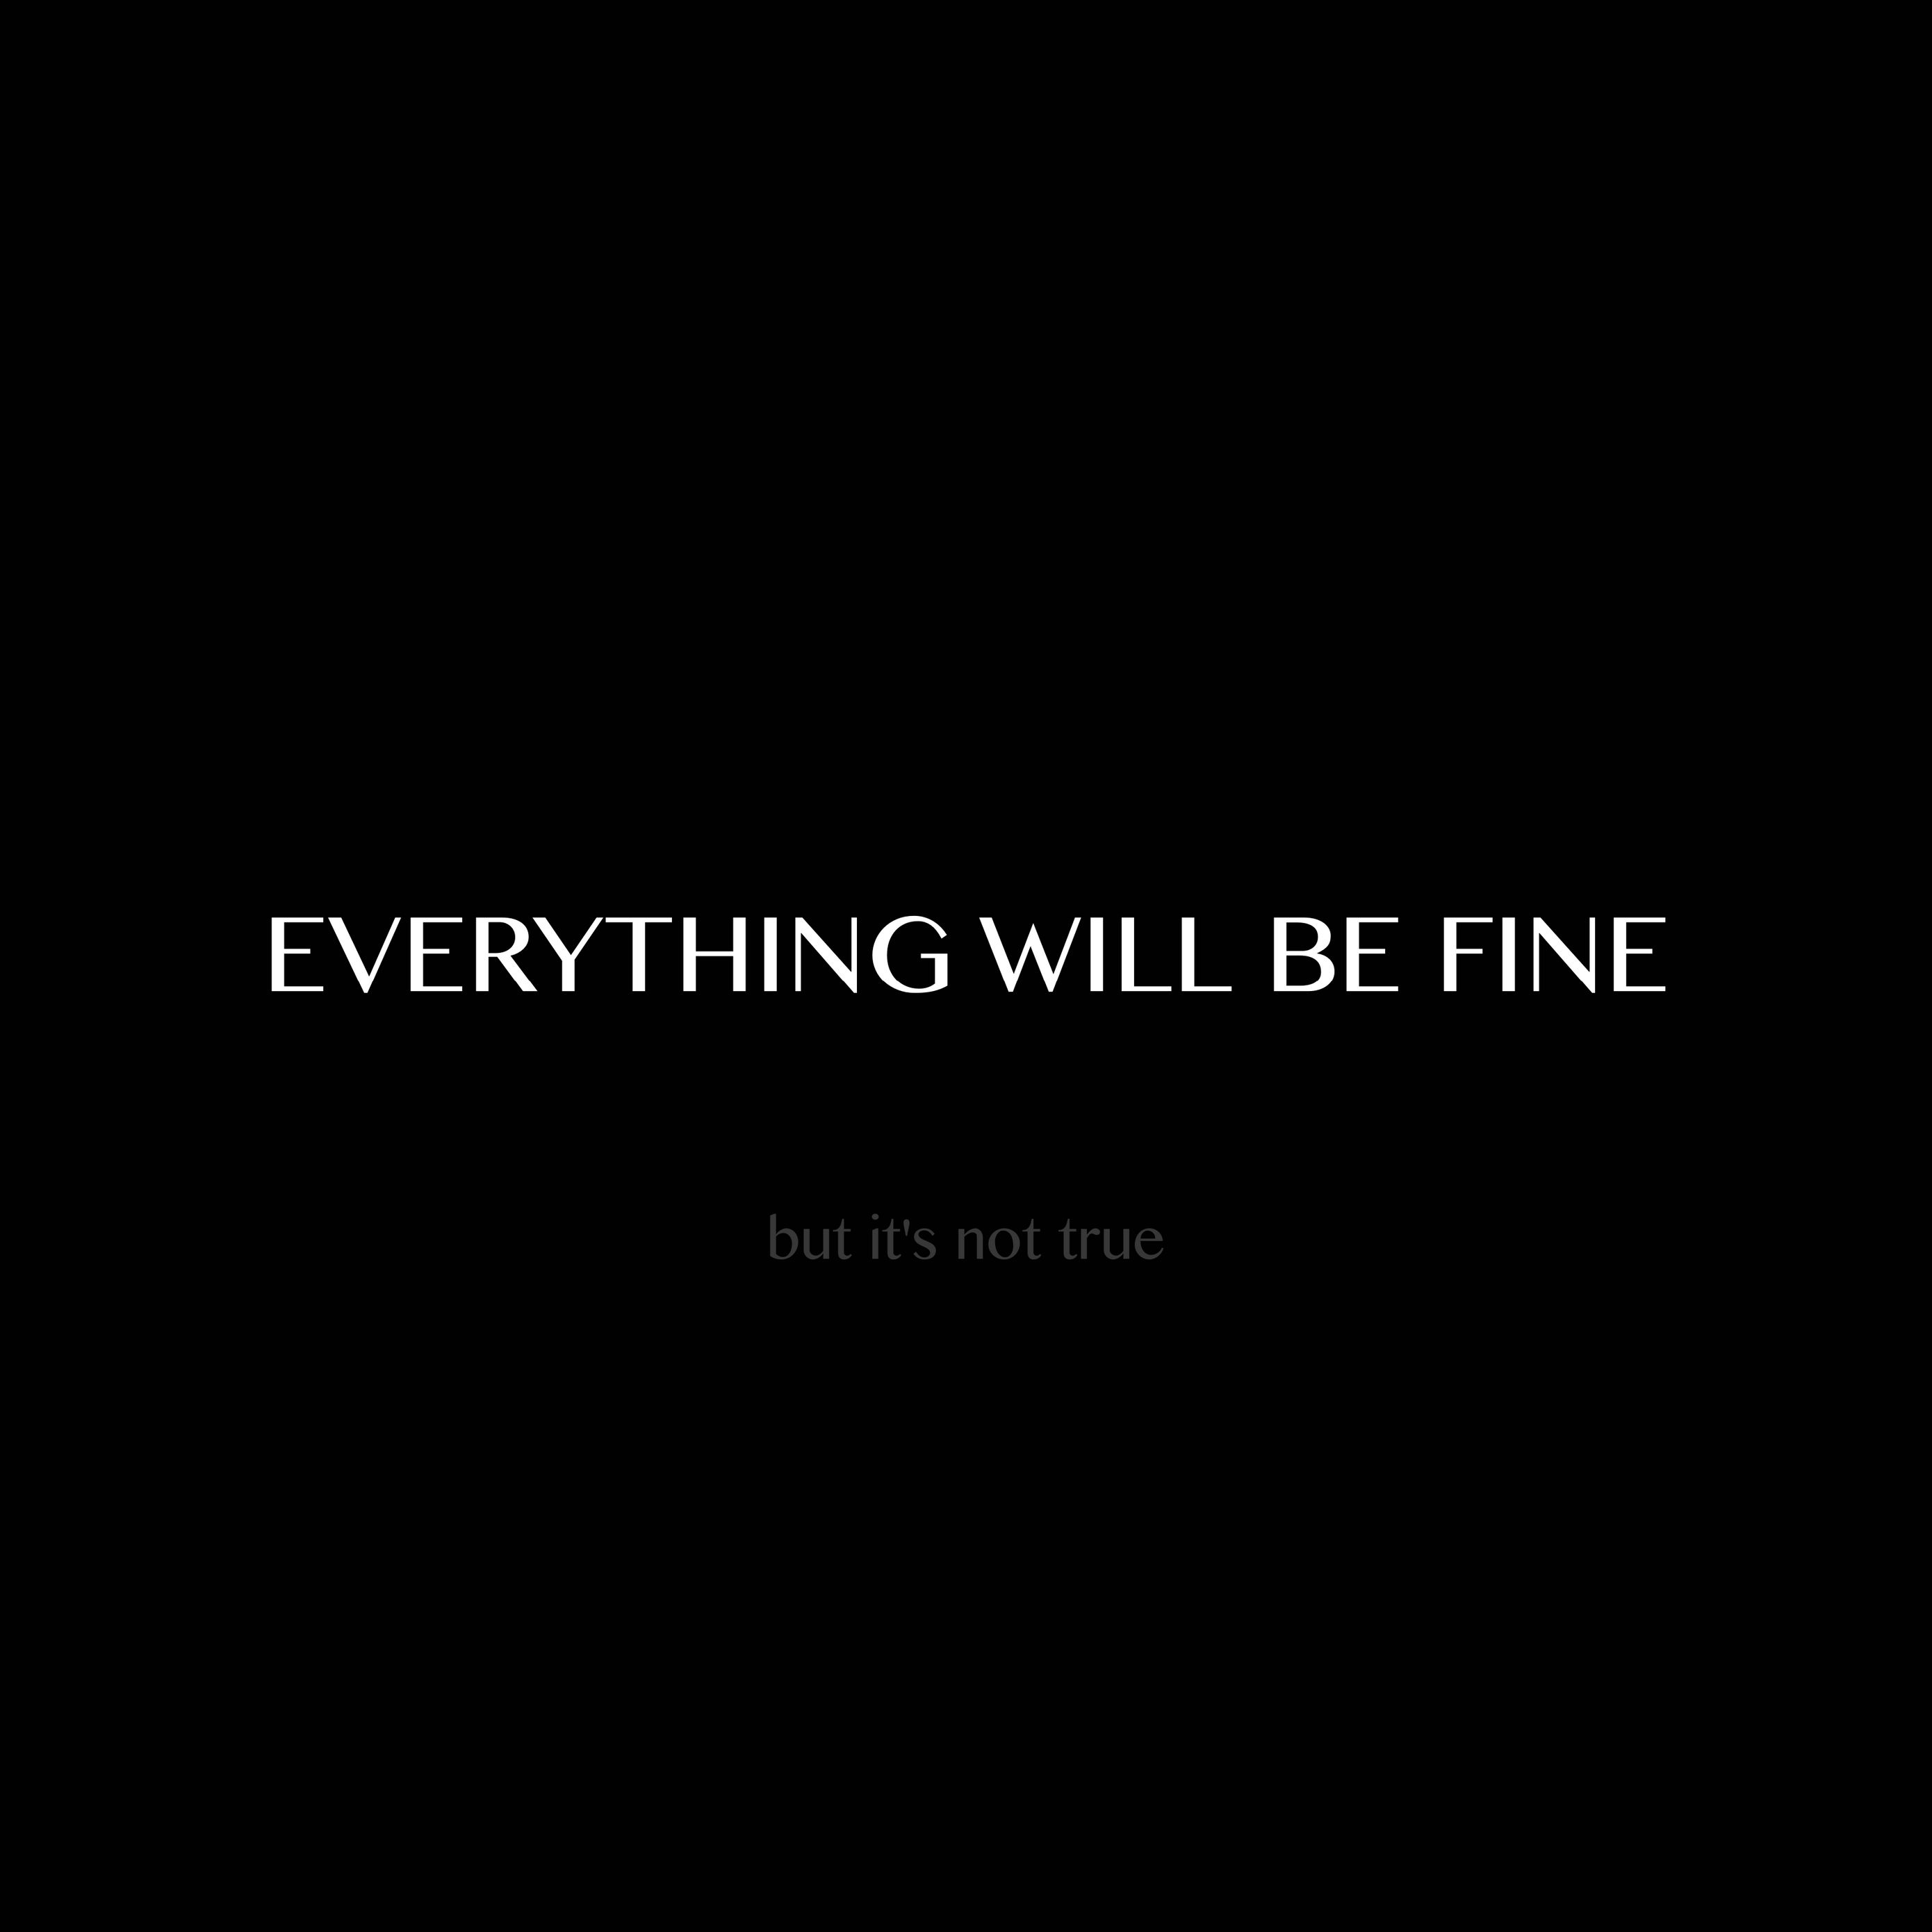 You to me are everything. Everything will be Fine. Everything will be Fine обои. Everything will be Fine на чёрном фоне. Депрессивные Мотивационные обои.